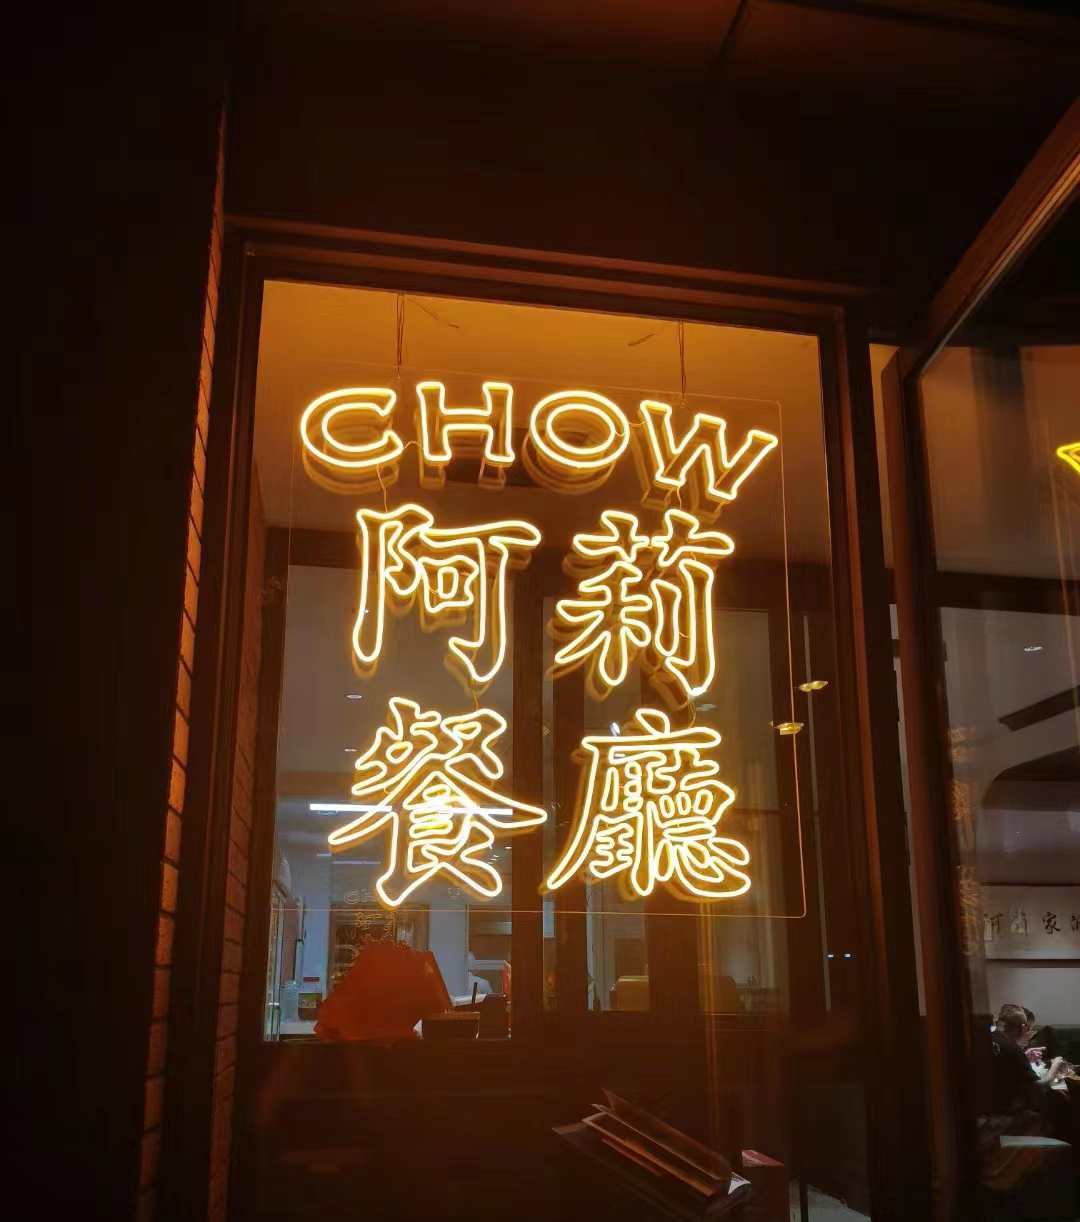 一家25年的上海社区餐厅，复工后遭遇的一切 *本文为「三联生活周刊」原创内容